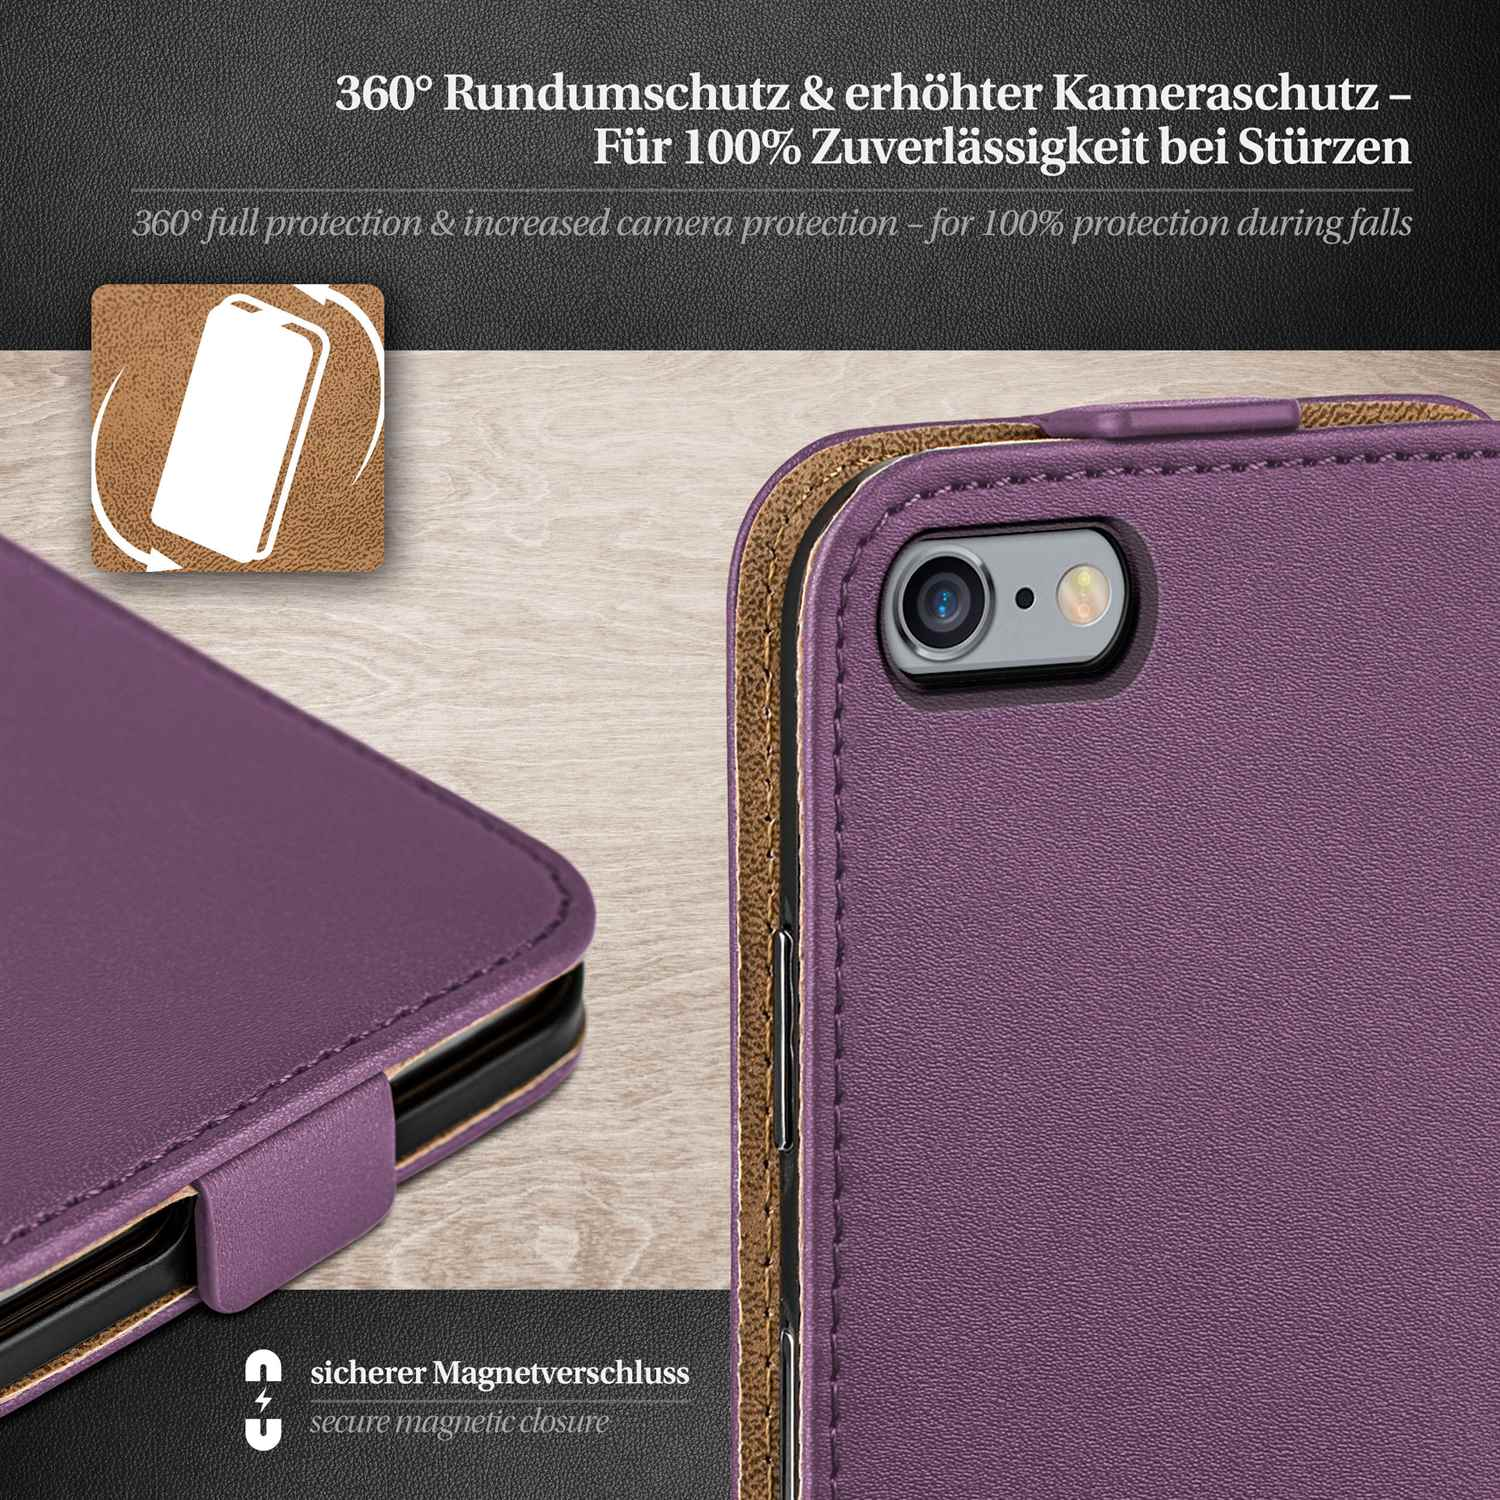 MOEX Flip Case, Cover, Indigo-Violet 6 Plus, Apple, Flip iPhone